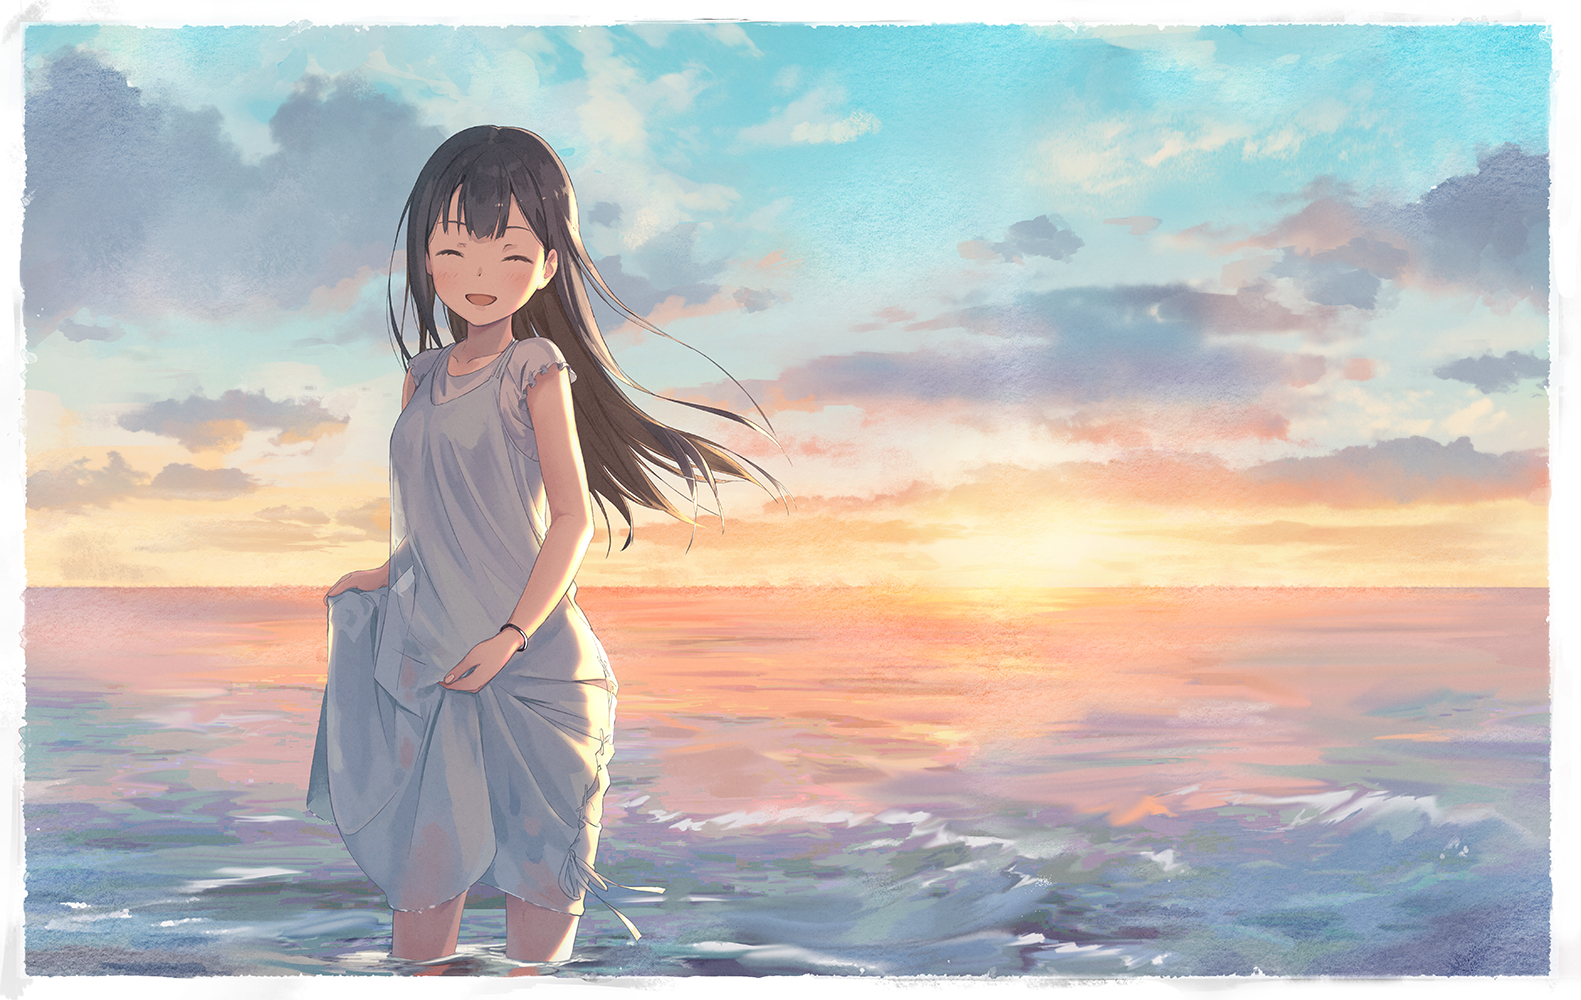 Anime 1581x1000 anime anime girls digital art artwork portrait 2D brunette smiling dress sea sunset